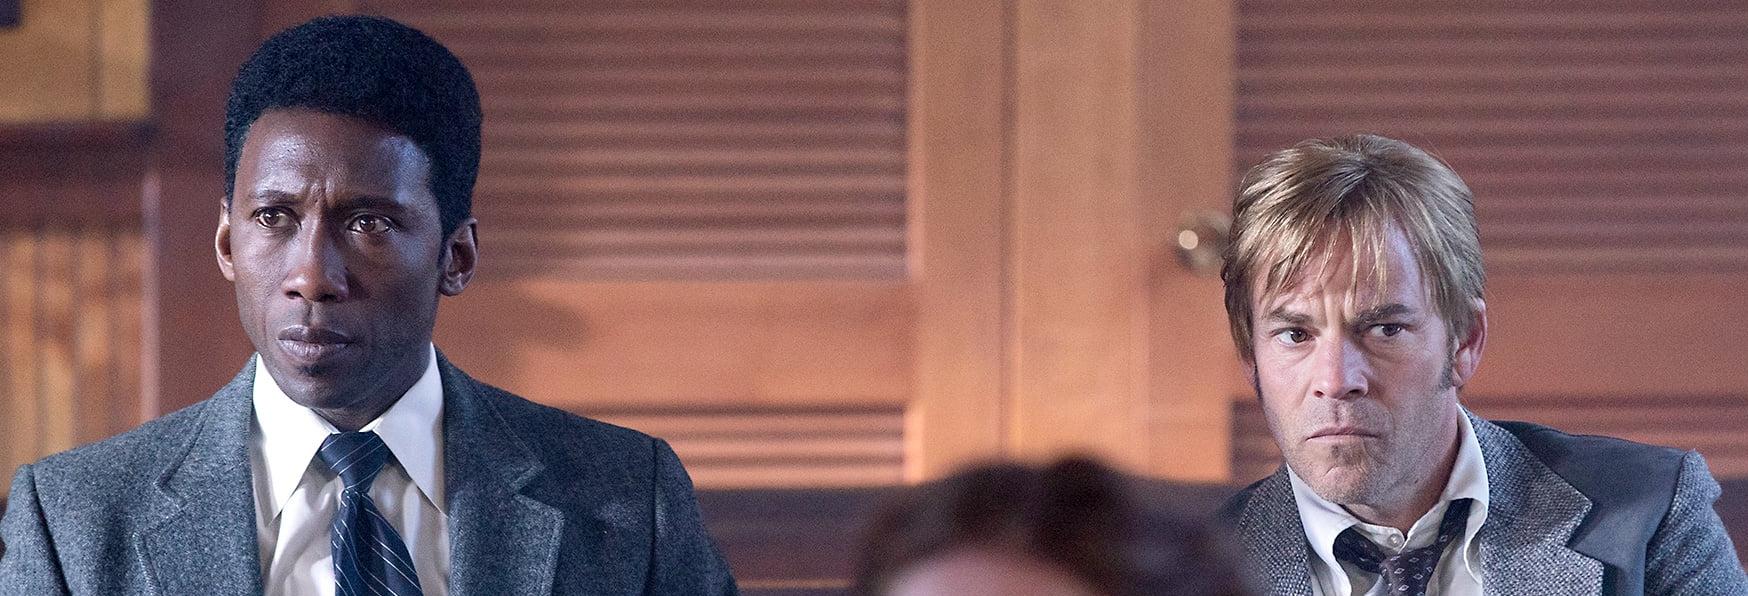 True Detective: HBO parla di una potenziale quarta stagione della serie